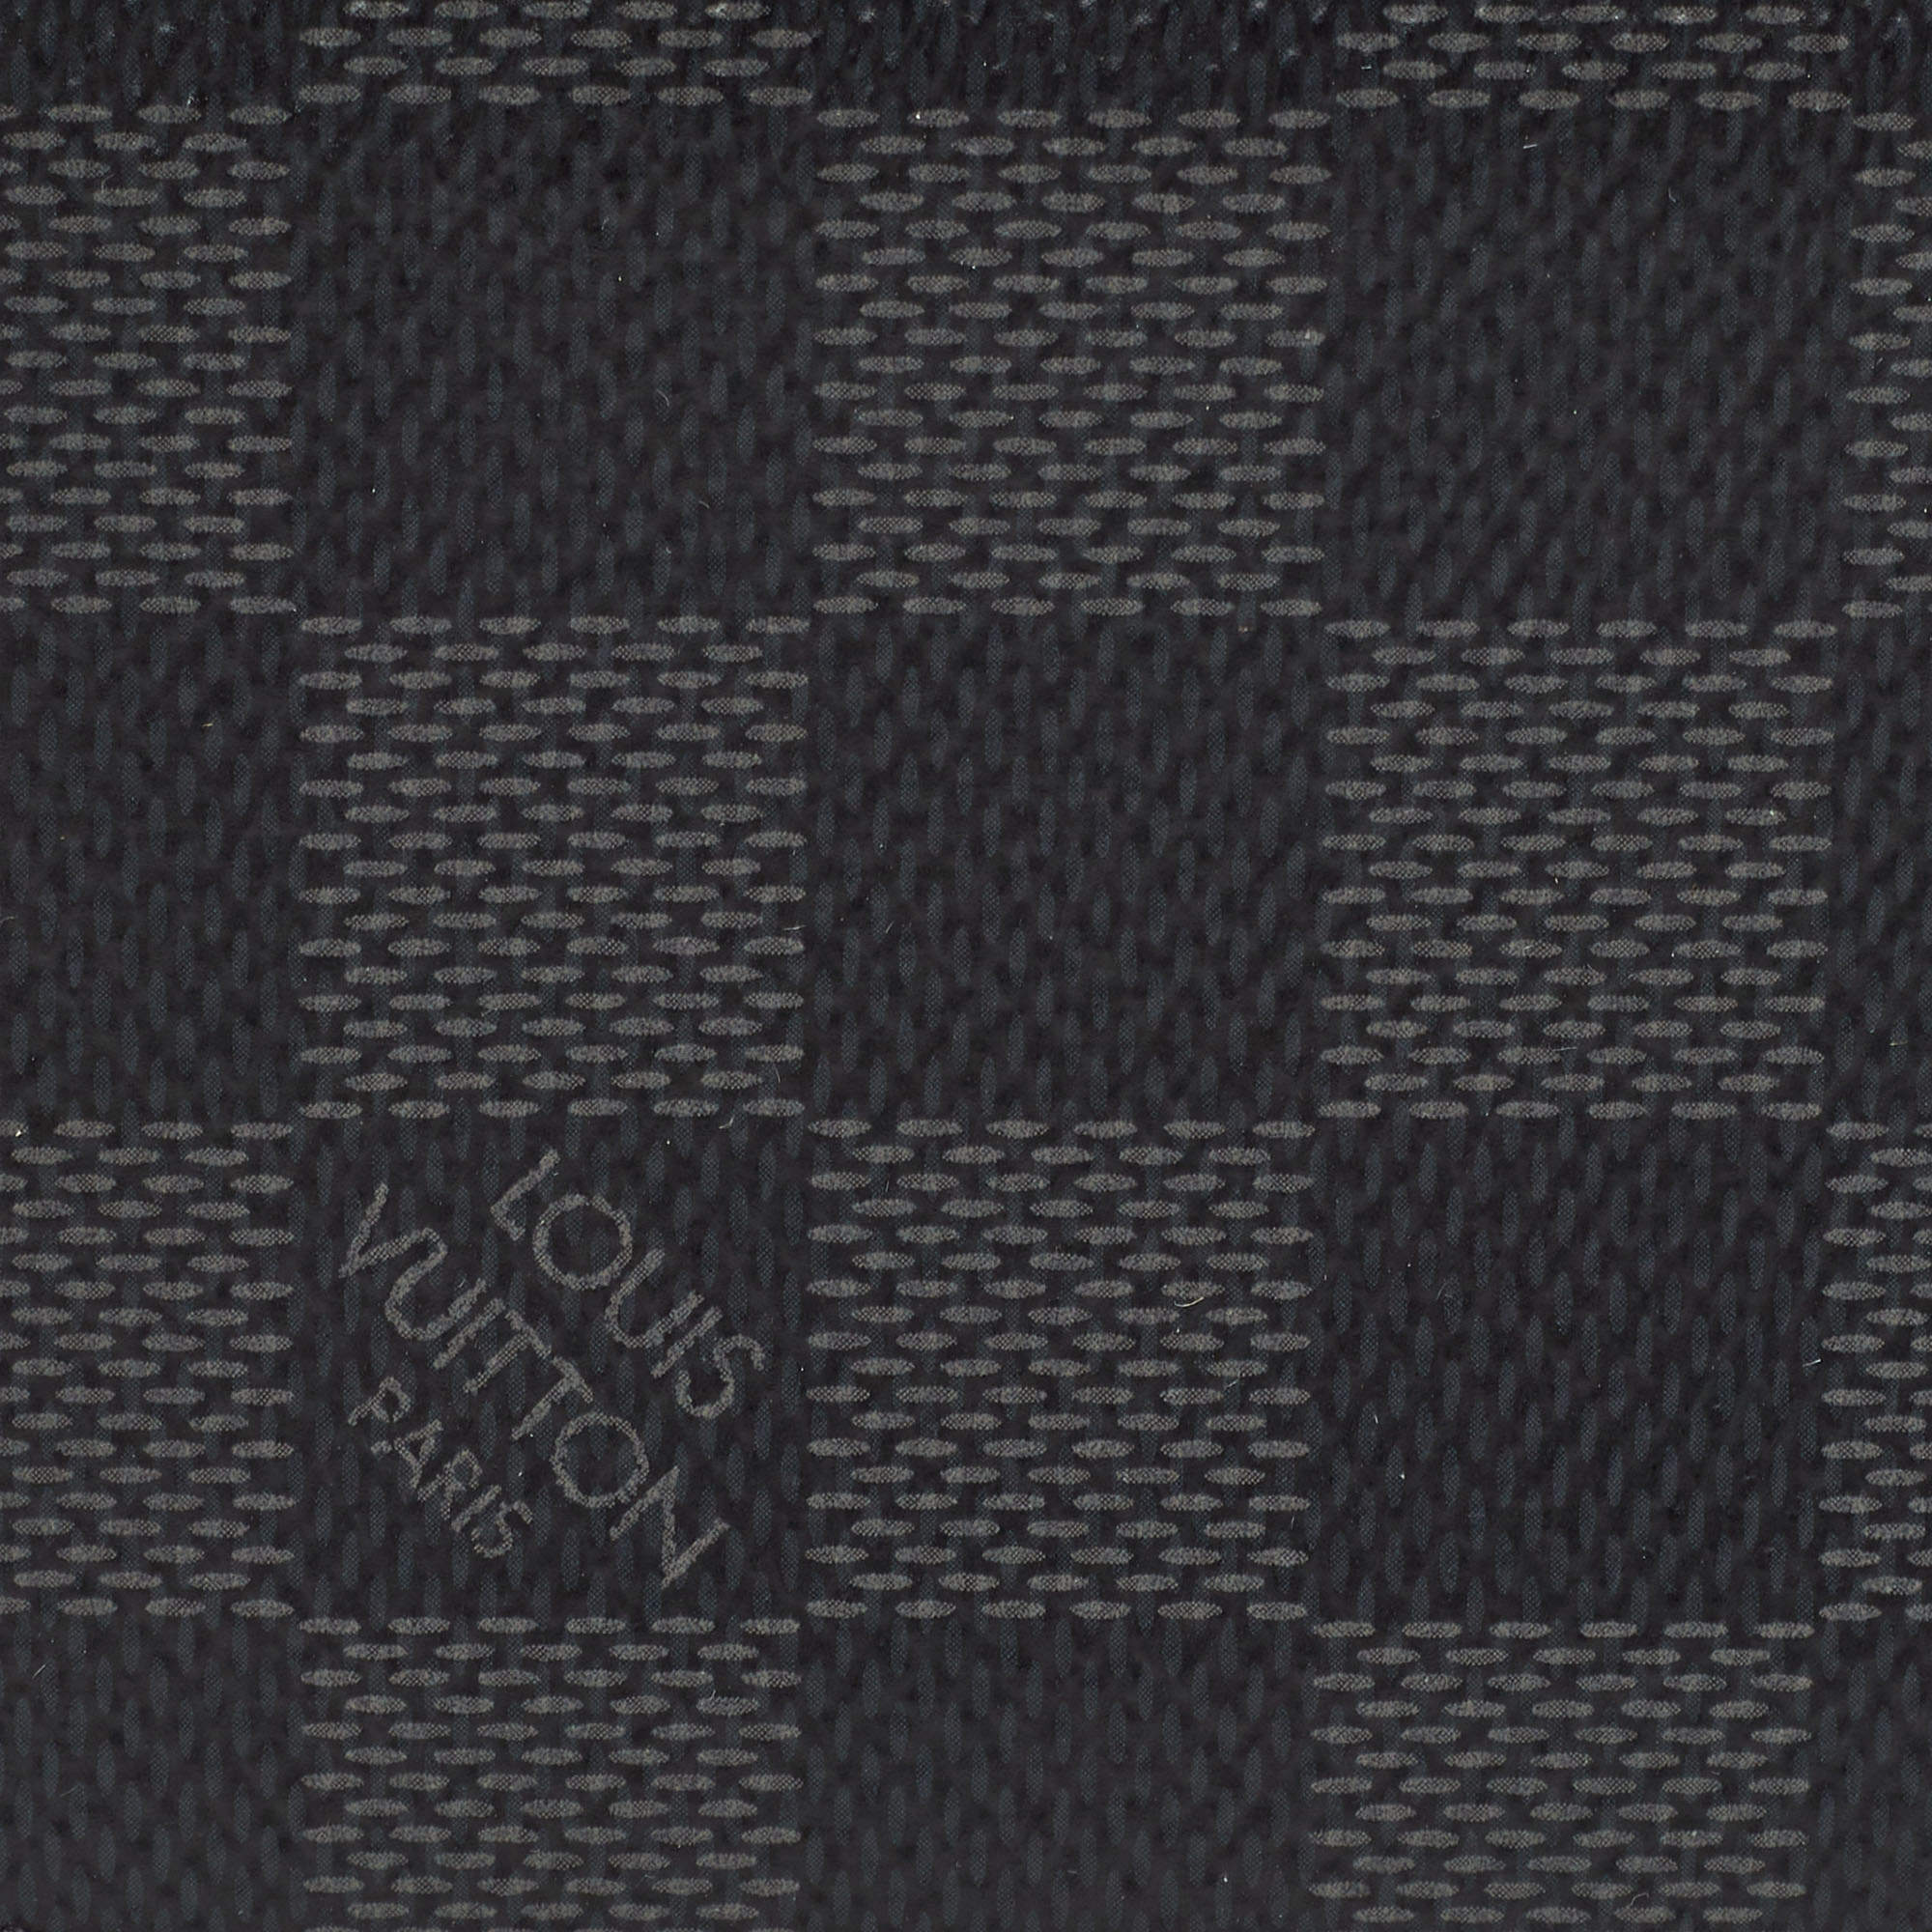 Louis Vuitton Damier Graphite Graphic Pocket Organizer – Savonches